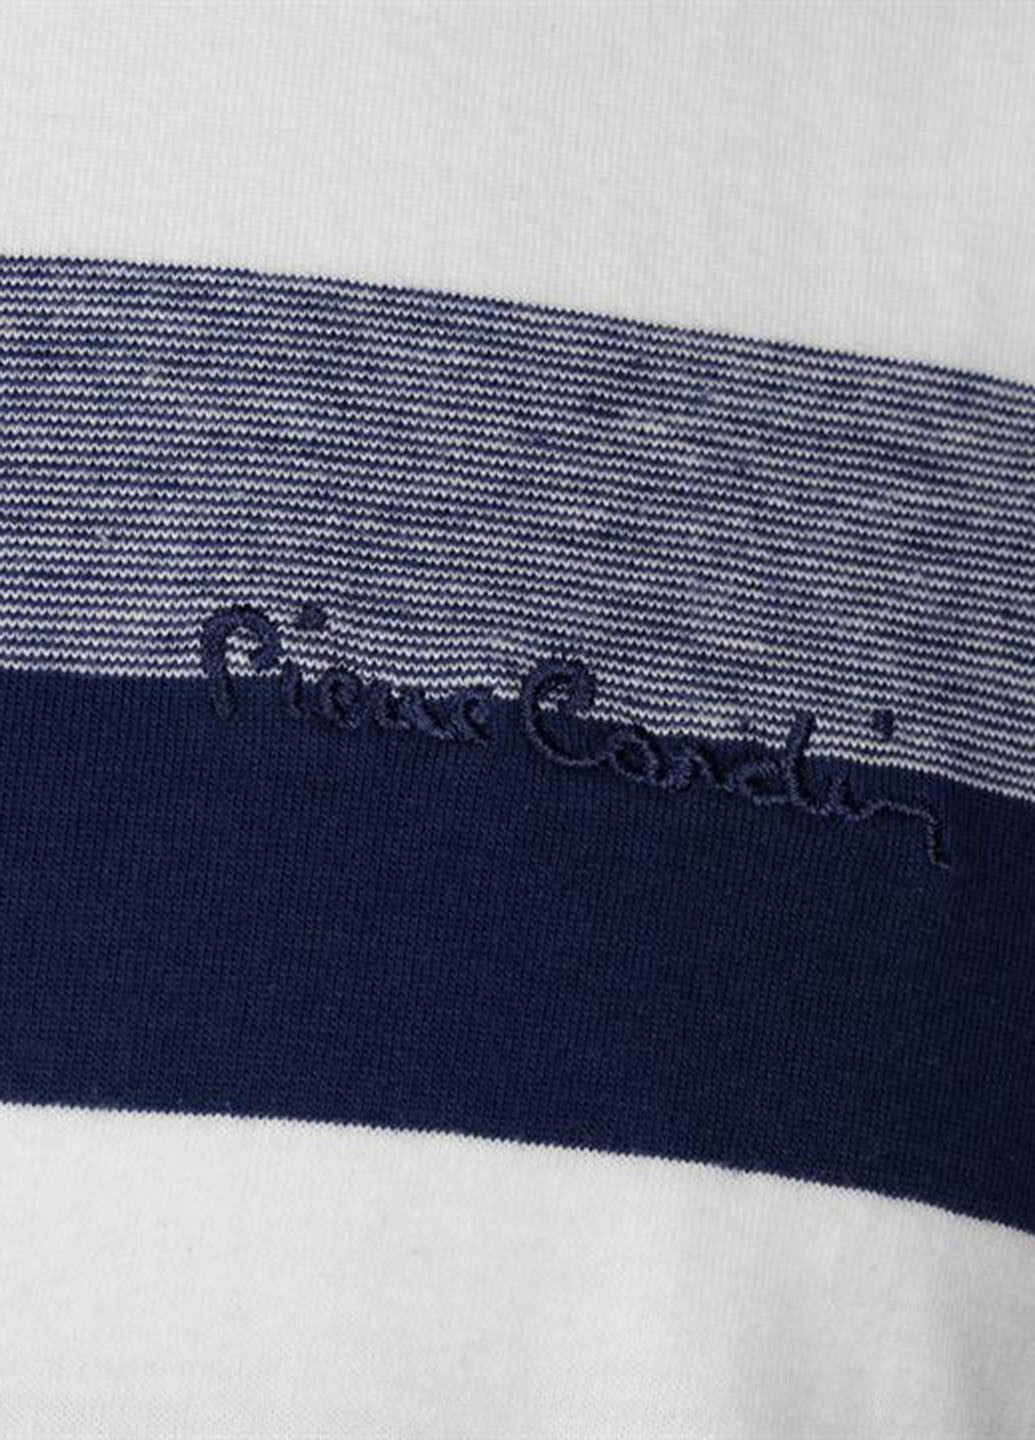 Темно-синяя футболка-поло для мужчин Pierre Cardin с логотипом